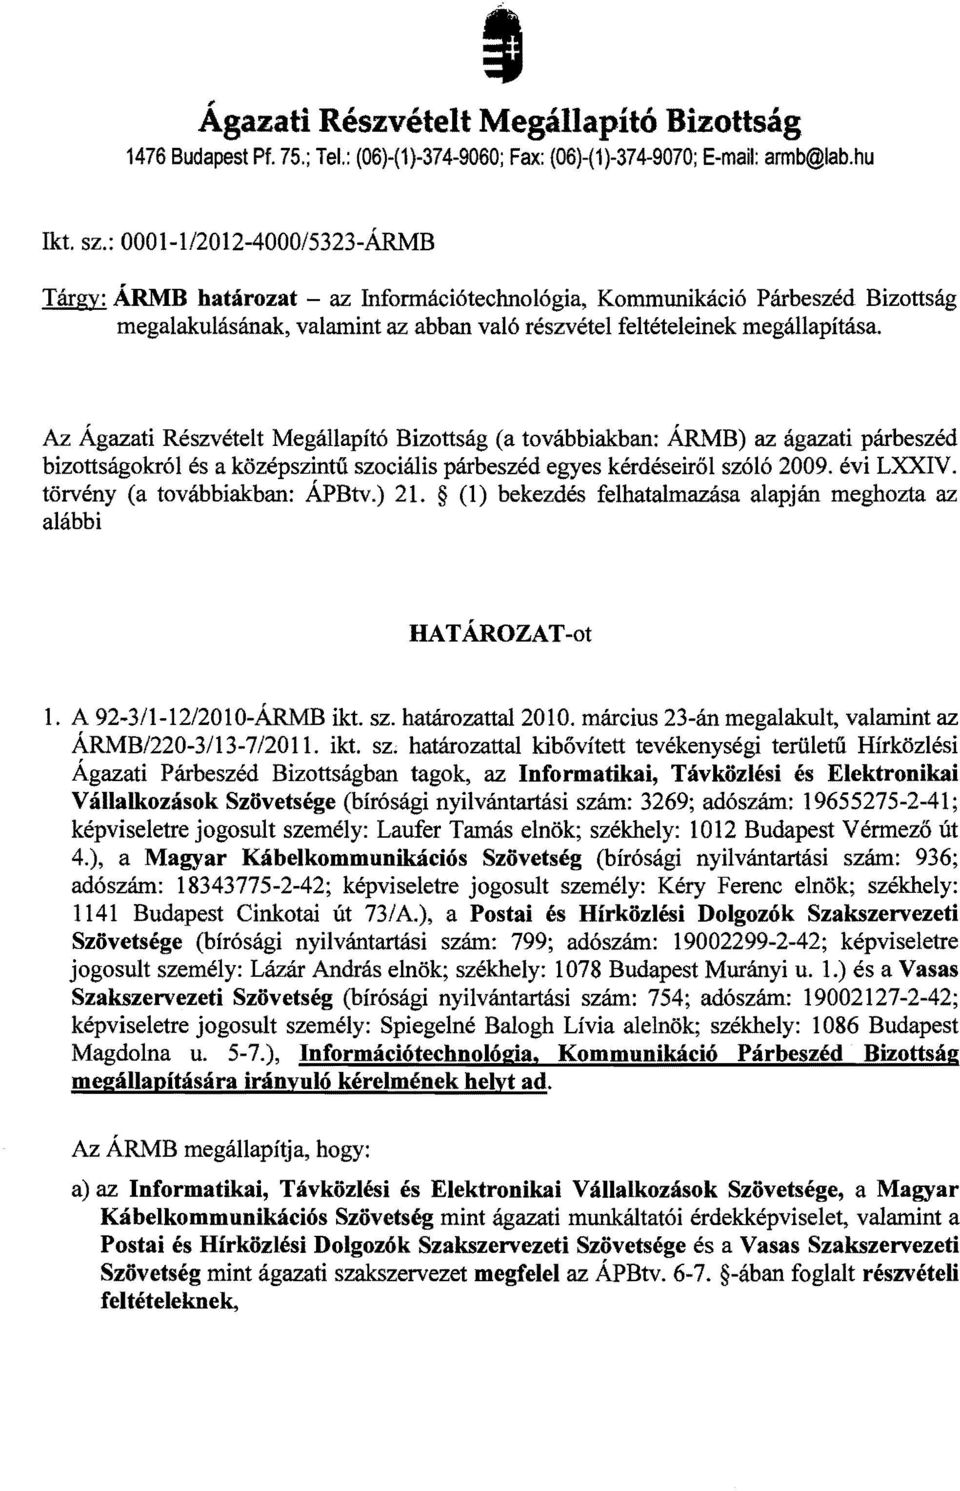 Az Agazati Reszvetelt Megallapit6 Bizottsag (a tovabbiakban: ARMB) az agazati parbeszed bizottsagokr6l es a kozepszintii szocialis parbeszed egyes kerdeseir61 sz616 2009. evi LXXIV.